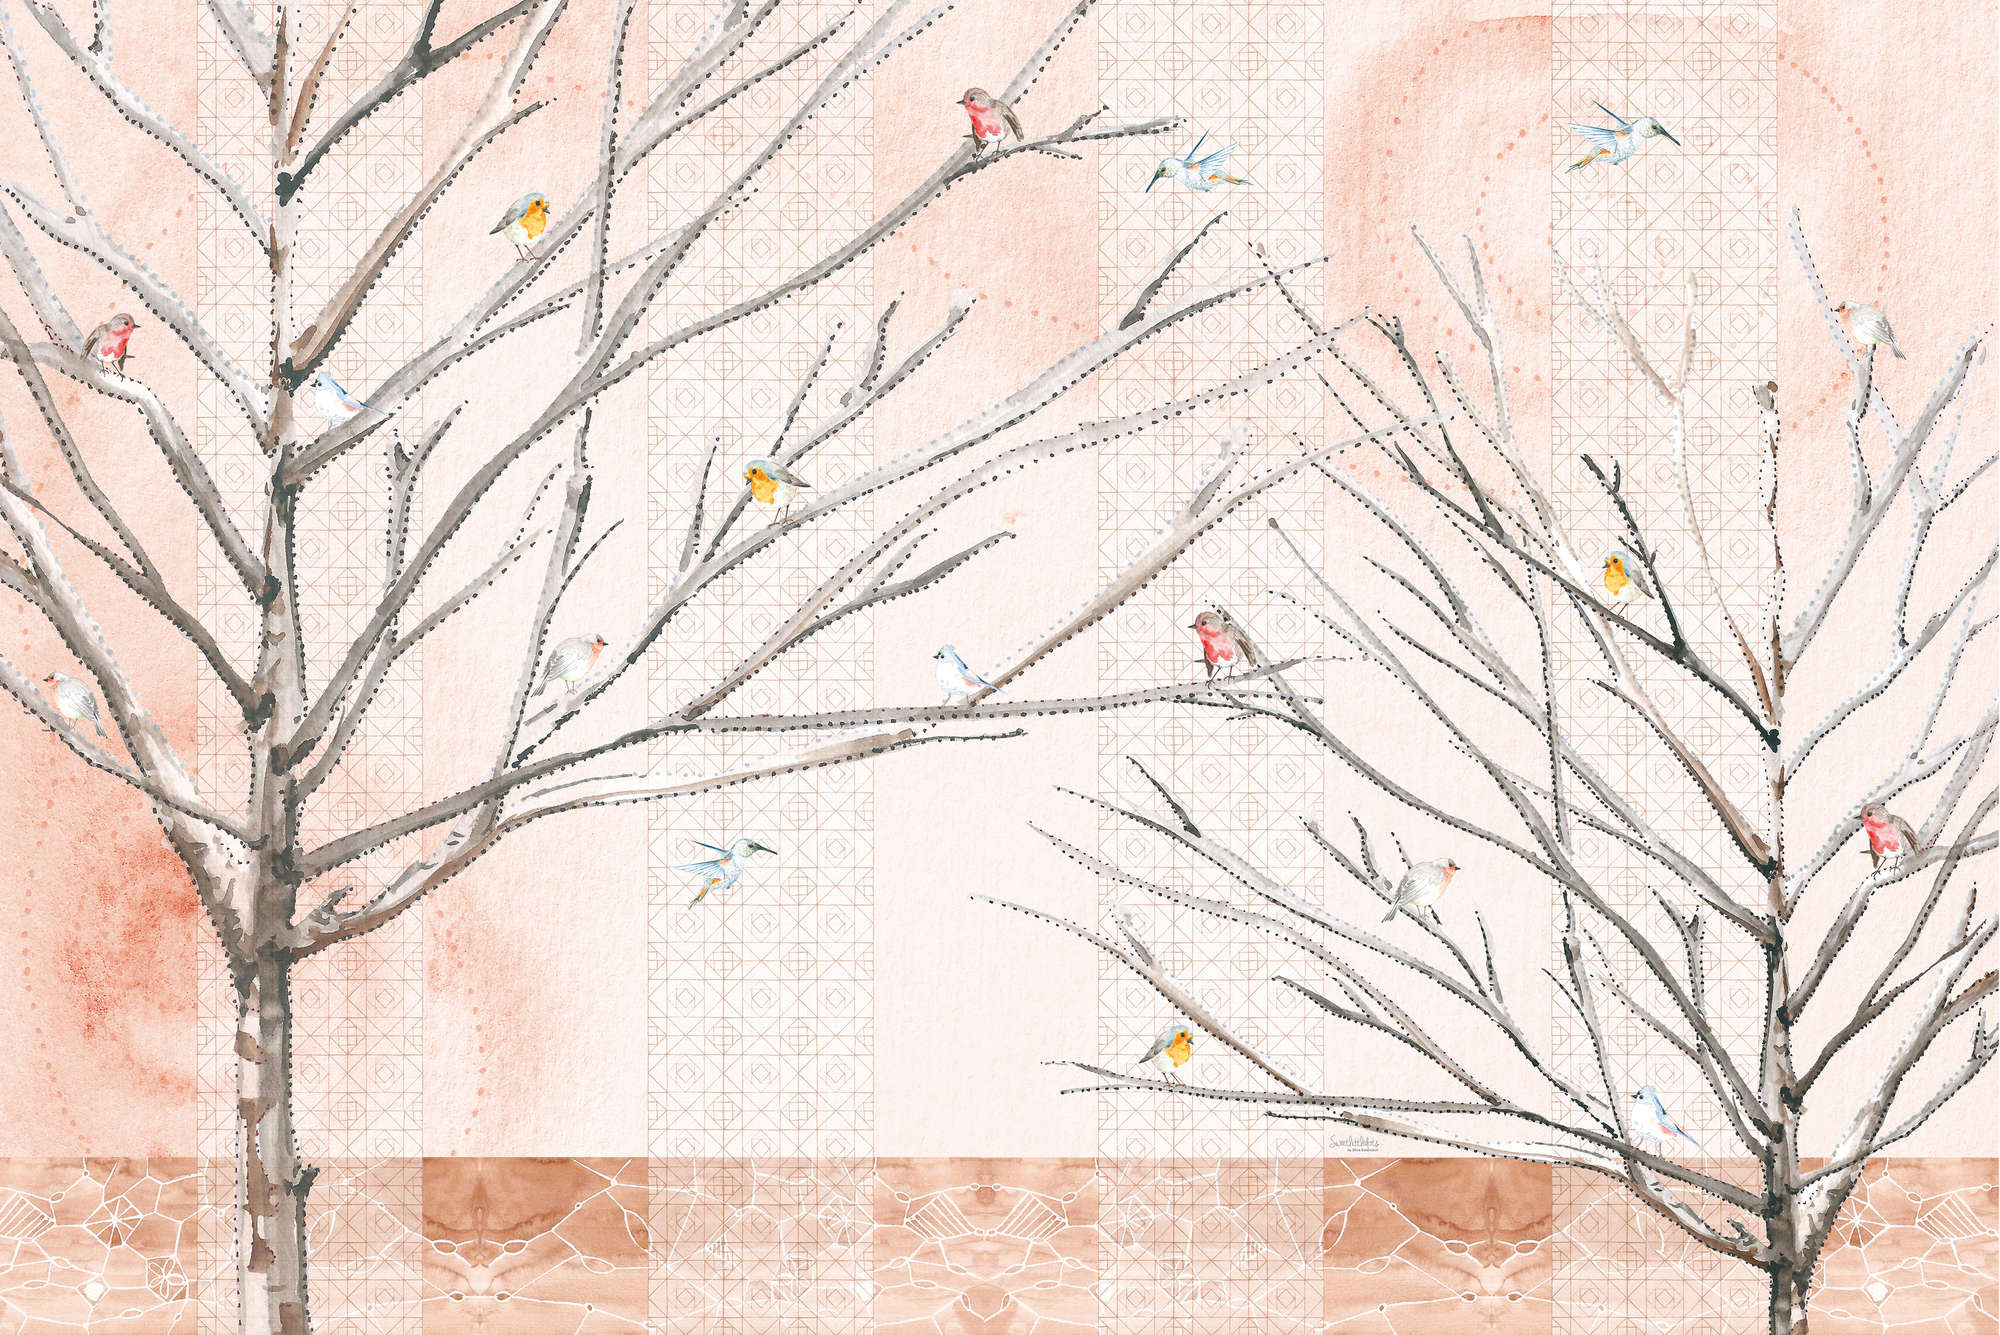             Künstlerische Fototapete Bäume mit Vögeln in Beige und Braun auf Matt Glattvlies
        